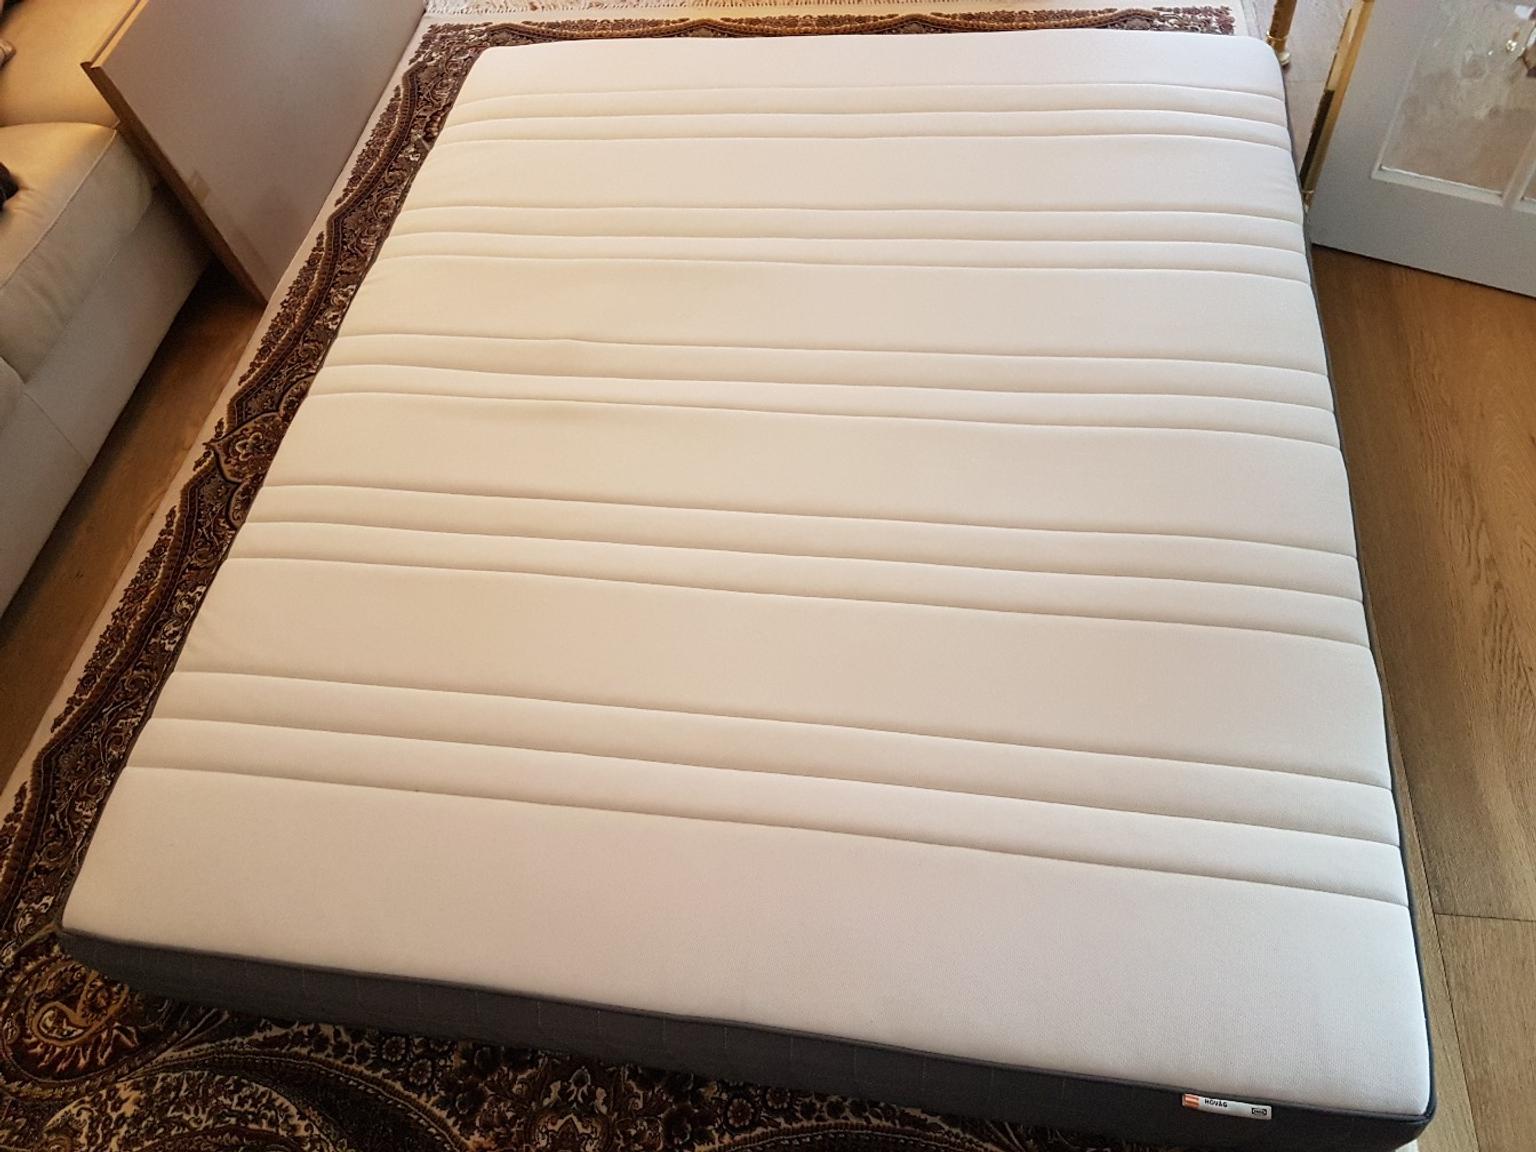 hövåg pocket sprung mattress firm review